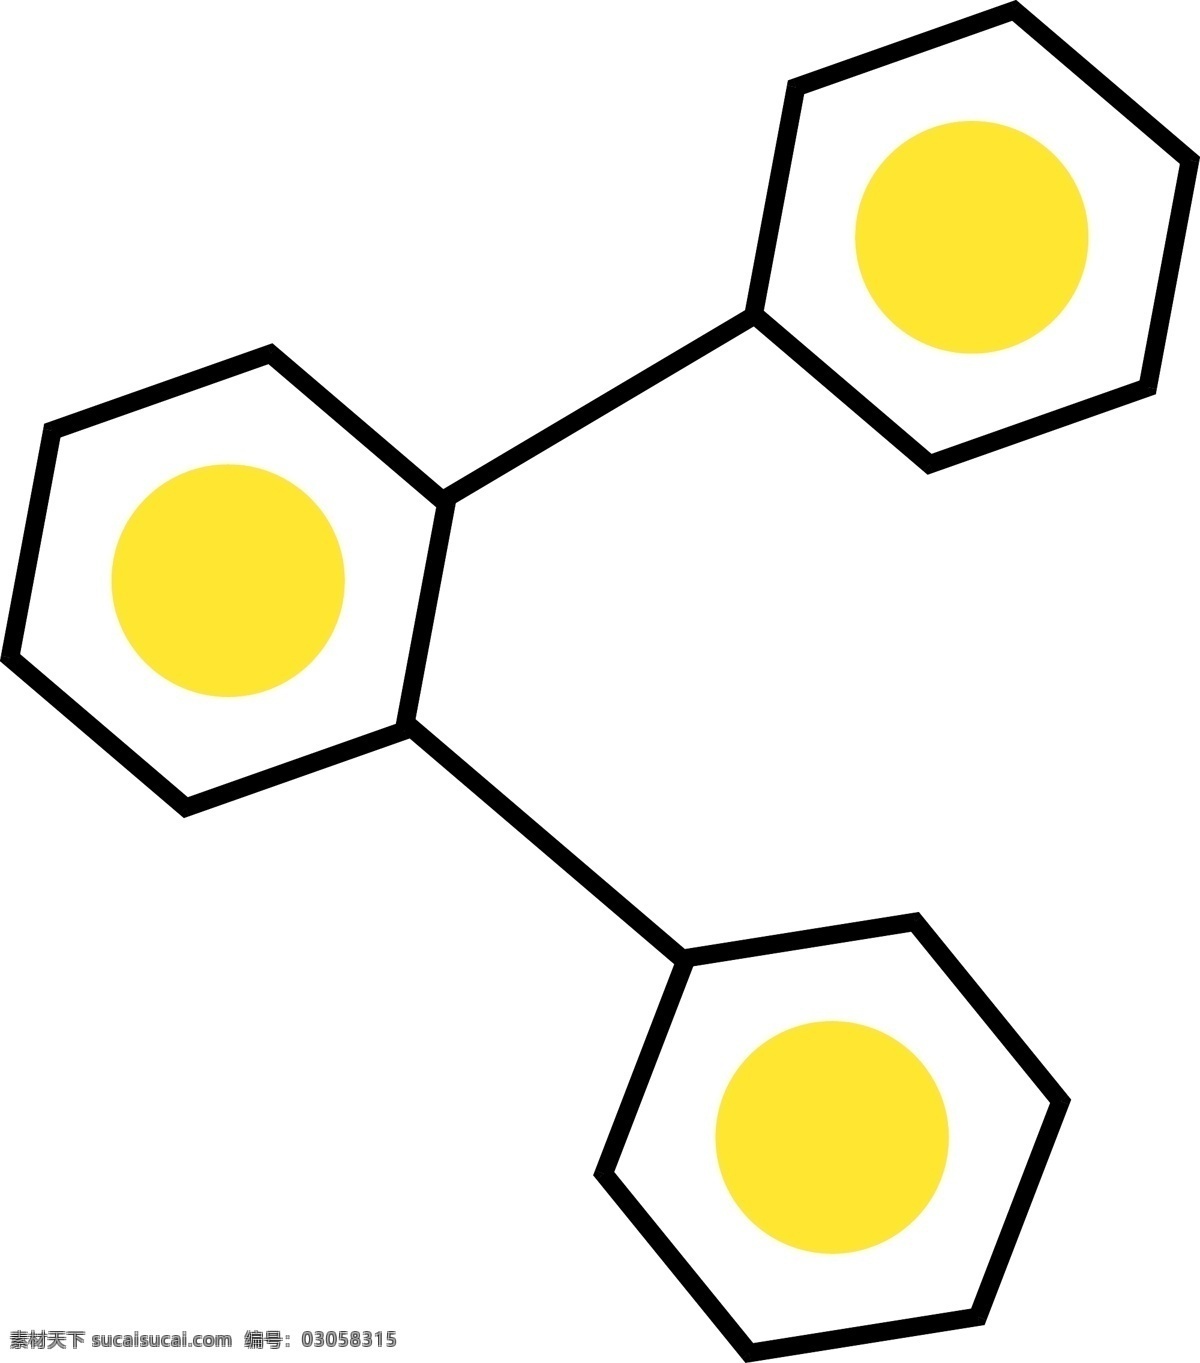 黄色 手绘 分享 按钮 元素 弯曲 弧度 圆环 点状 卡通图标 科技